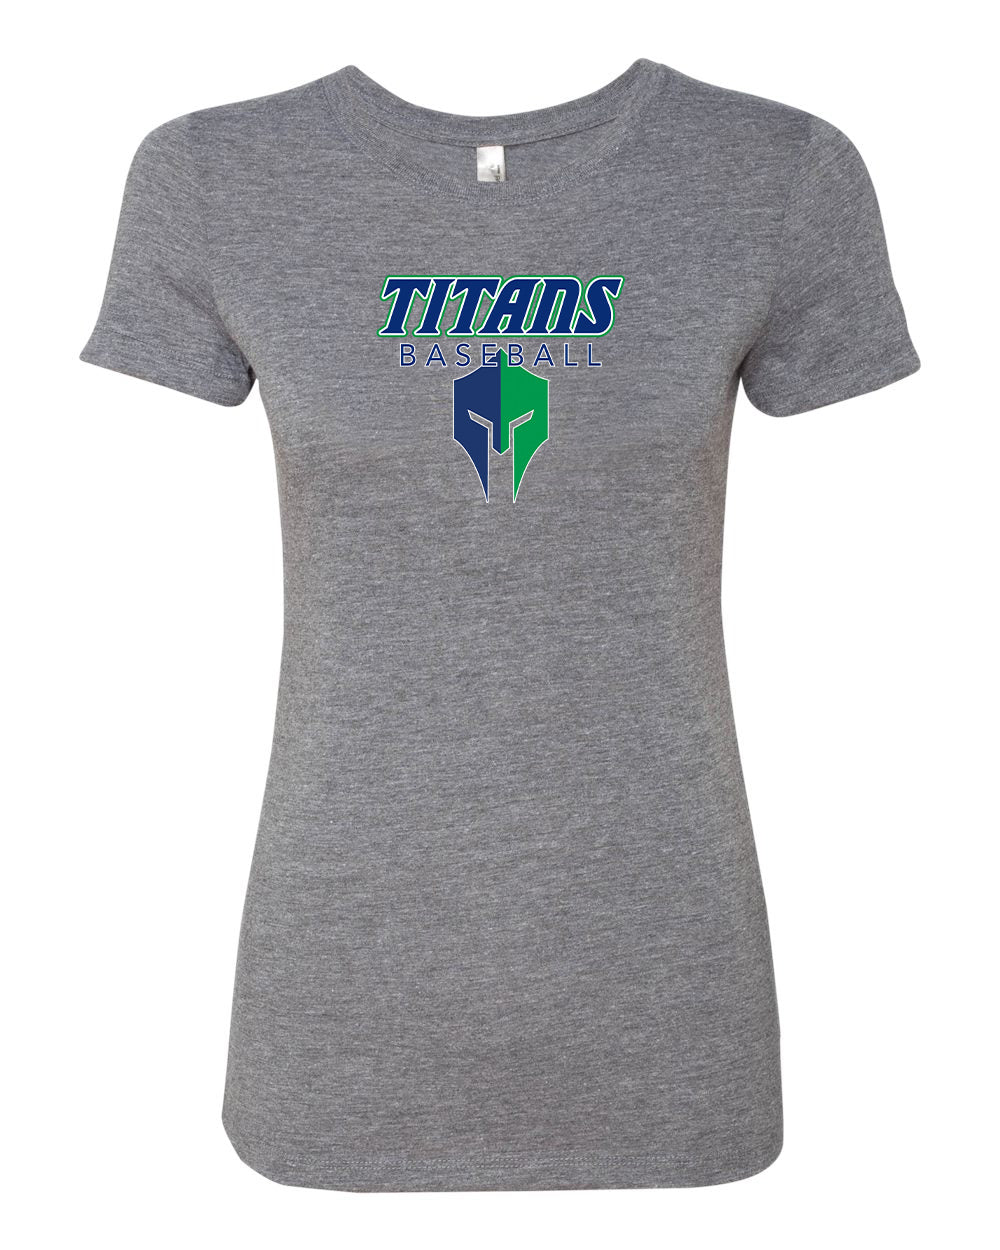 Titans Women’s Tri-Blend Blue T-Shirt "Classic" - 6710 (color options available)